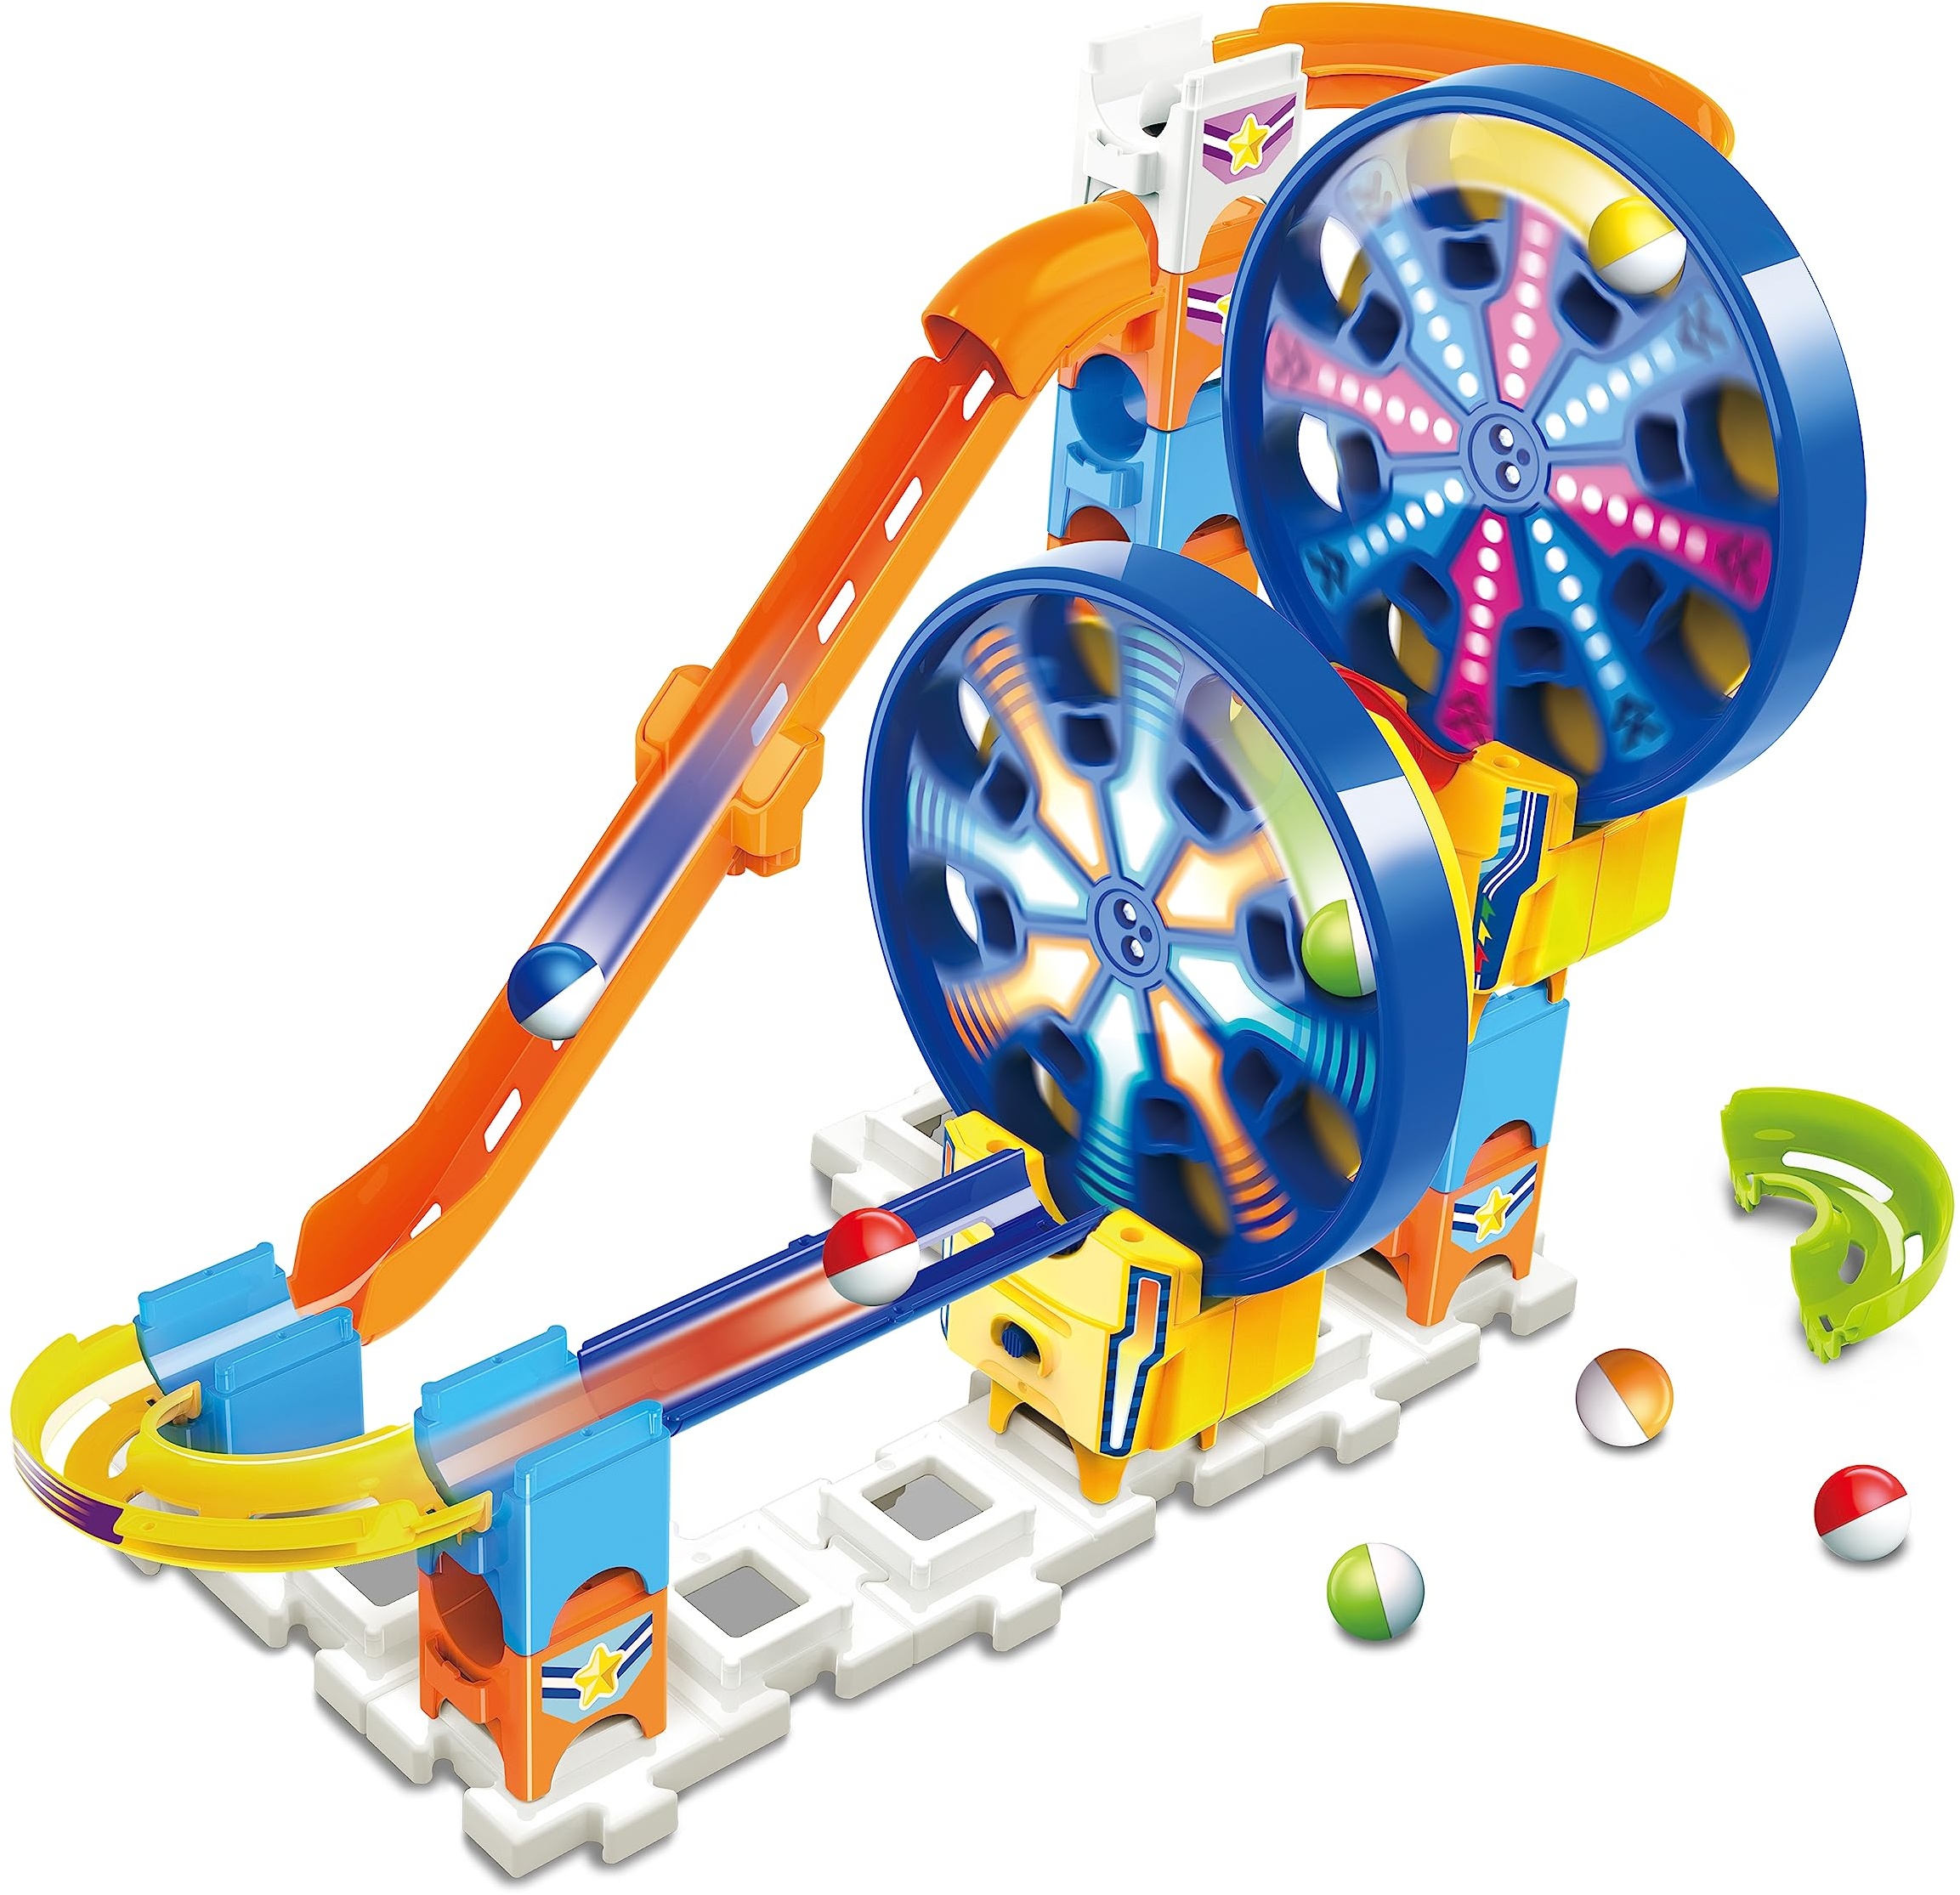 VTech Marble Rush - Fun Fair Set M300 E – Interaktive Murmelbahn mit spannenden Bahnelementen, verschiedenen Aufbaumöglichkeiten und Wegführungen – Für Kinder von 4-12 Jahren